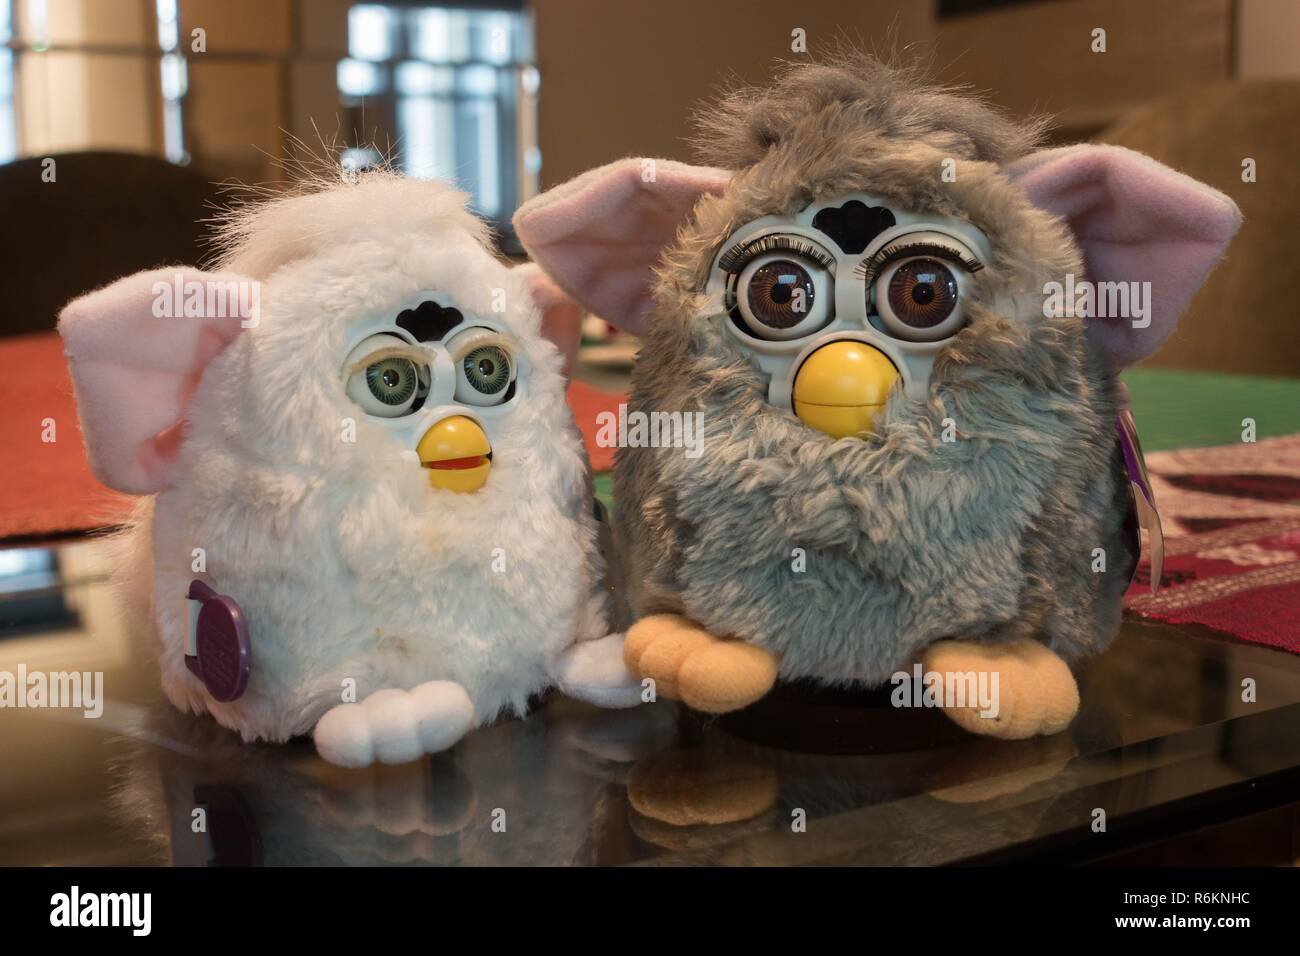 Furby Original et Furby bébé (blanc), doit-être parlant intelligent des jouets de 1998 et 1999 (bébé), fabriqué par Tiger electronics, attendent la conversation. Banque D'Images